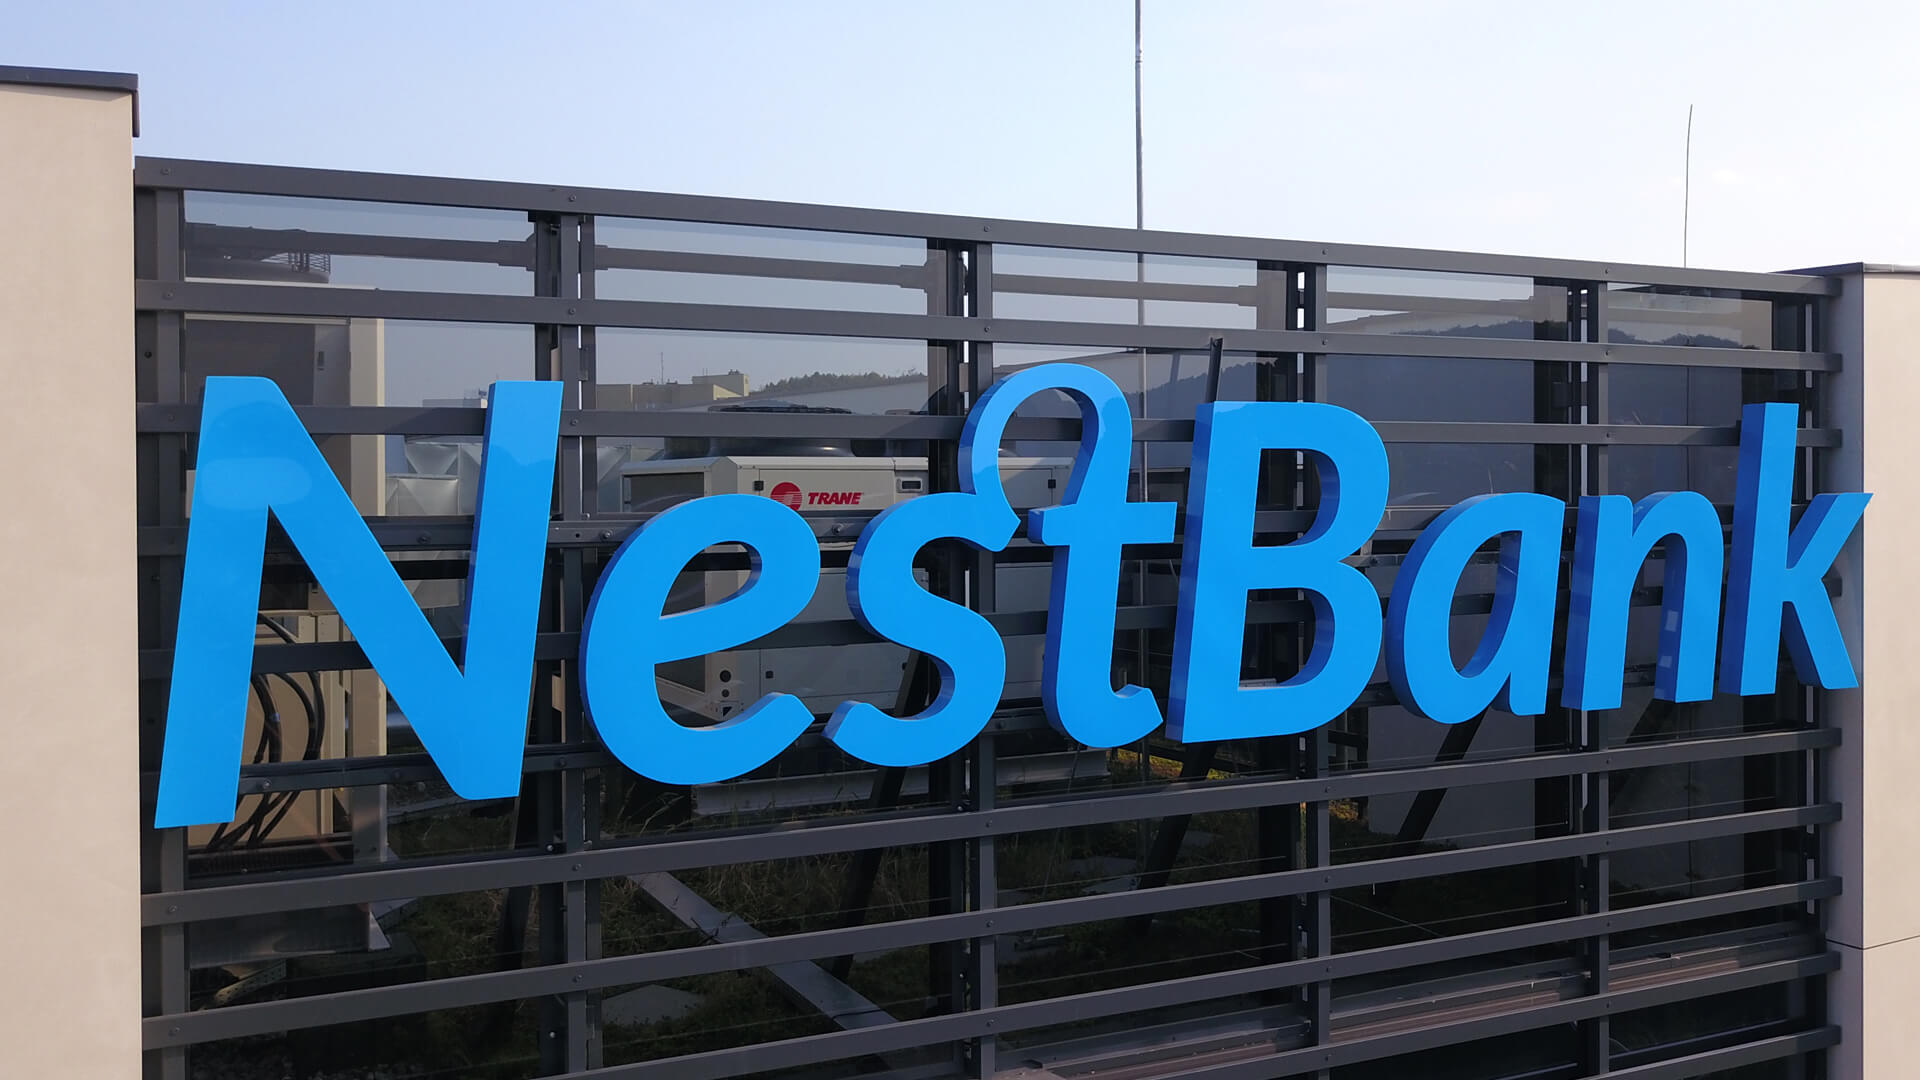 nest bank nestbank - nestbank-3D-led-letters-bank-3d-chanel-letters-reklama-nest-bank-litery-3d-na-budynku-litery-nest-bank